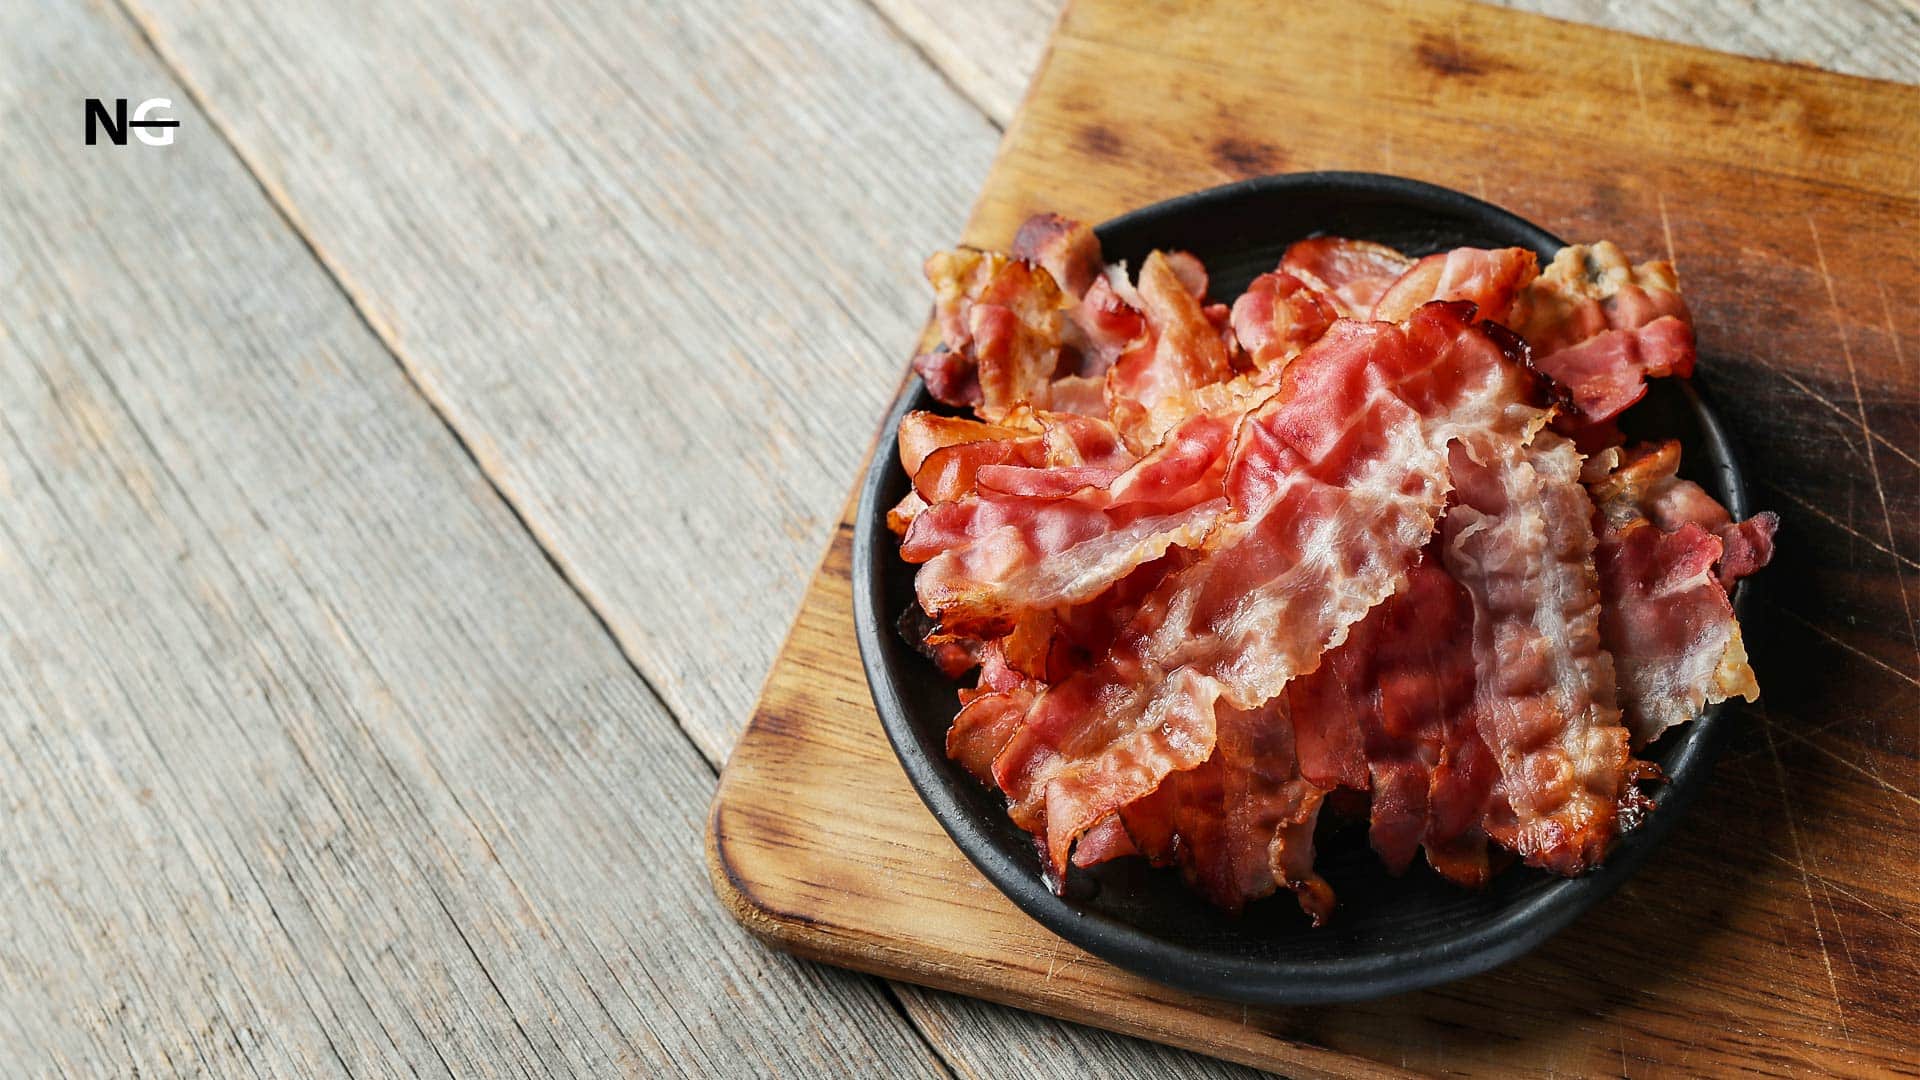 When Is Bacon Not Gluten-Free